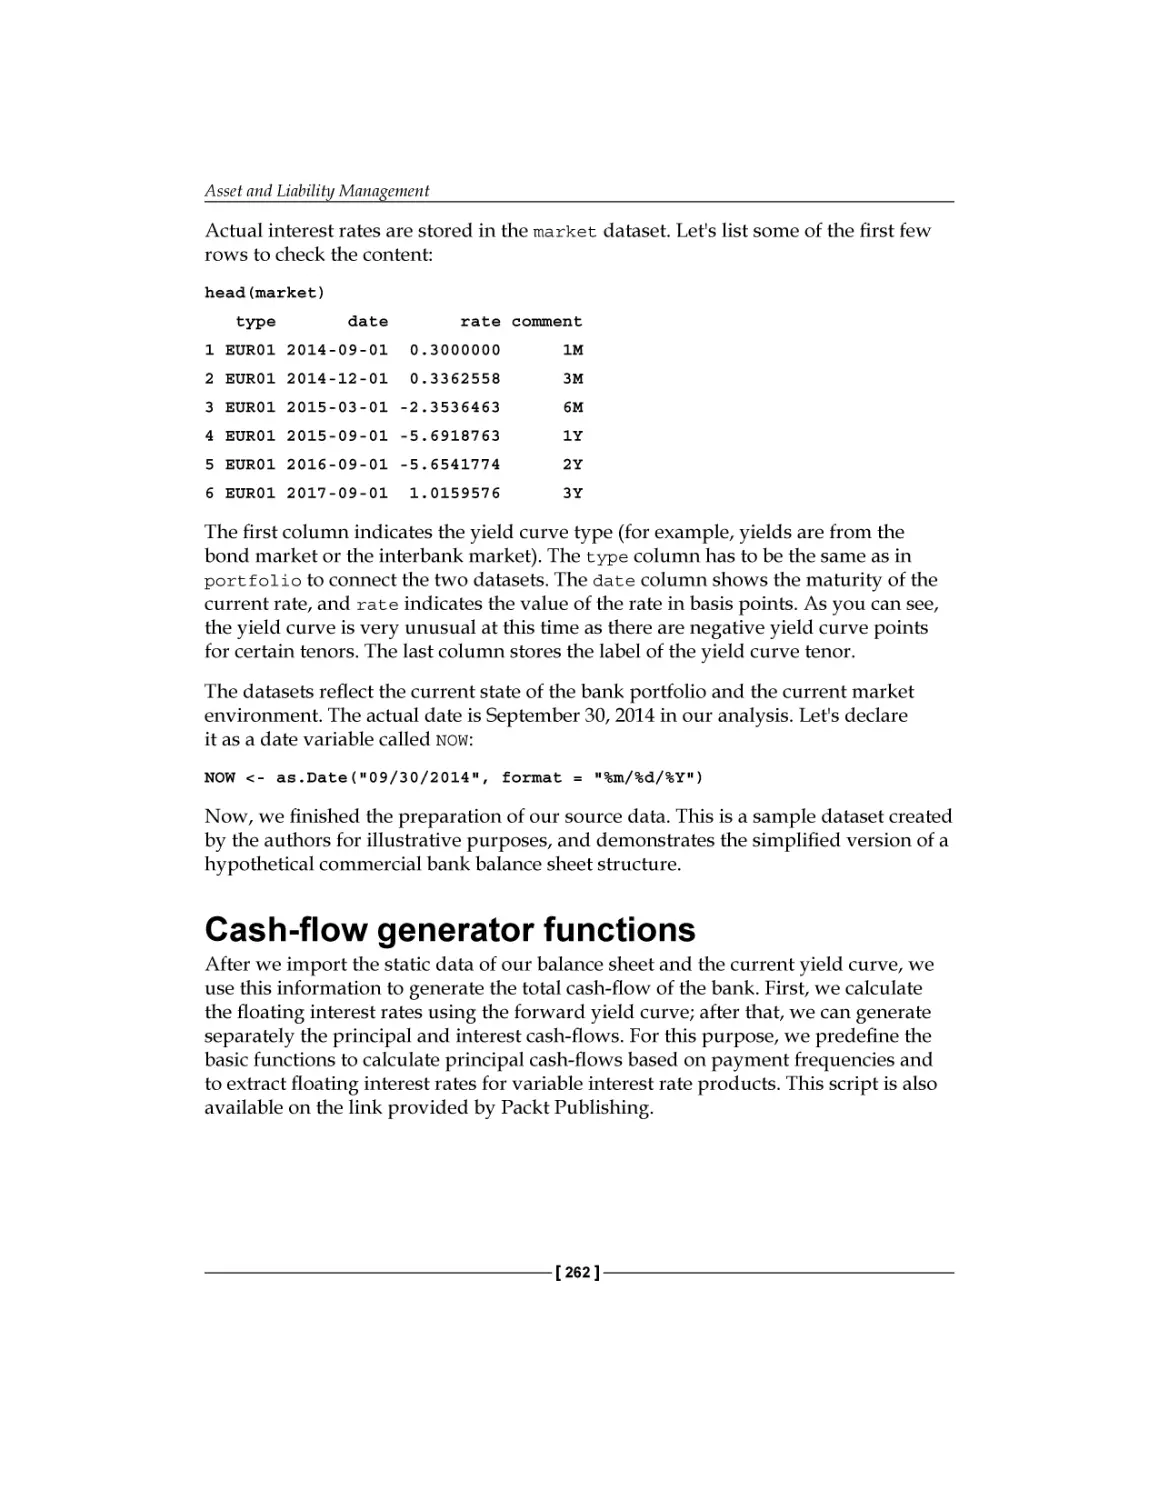 Cash-flow generator functions